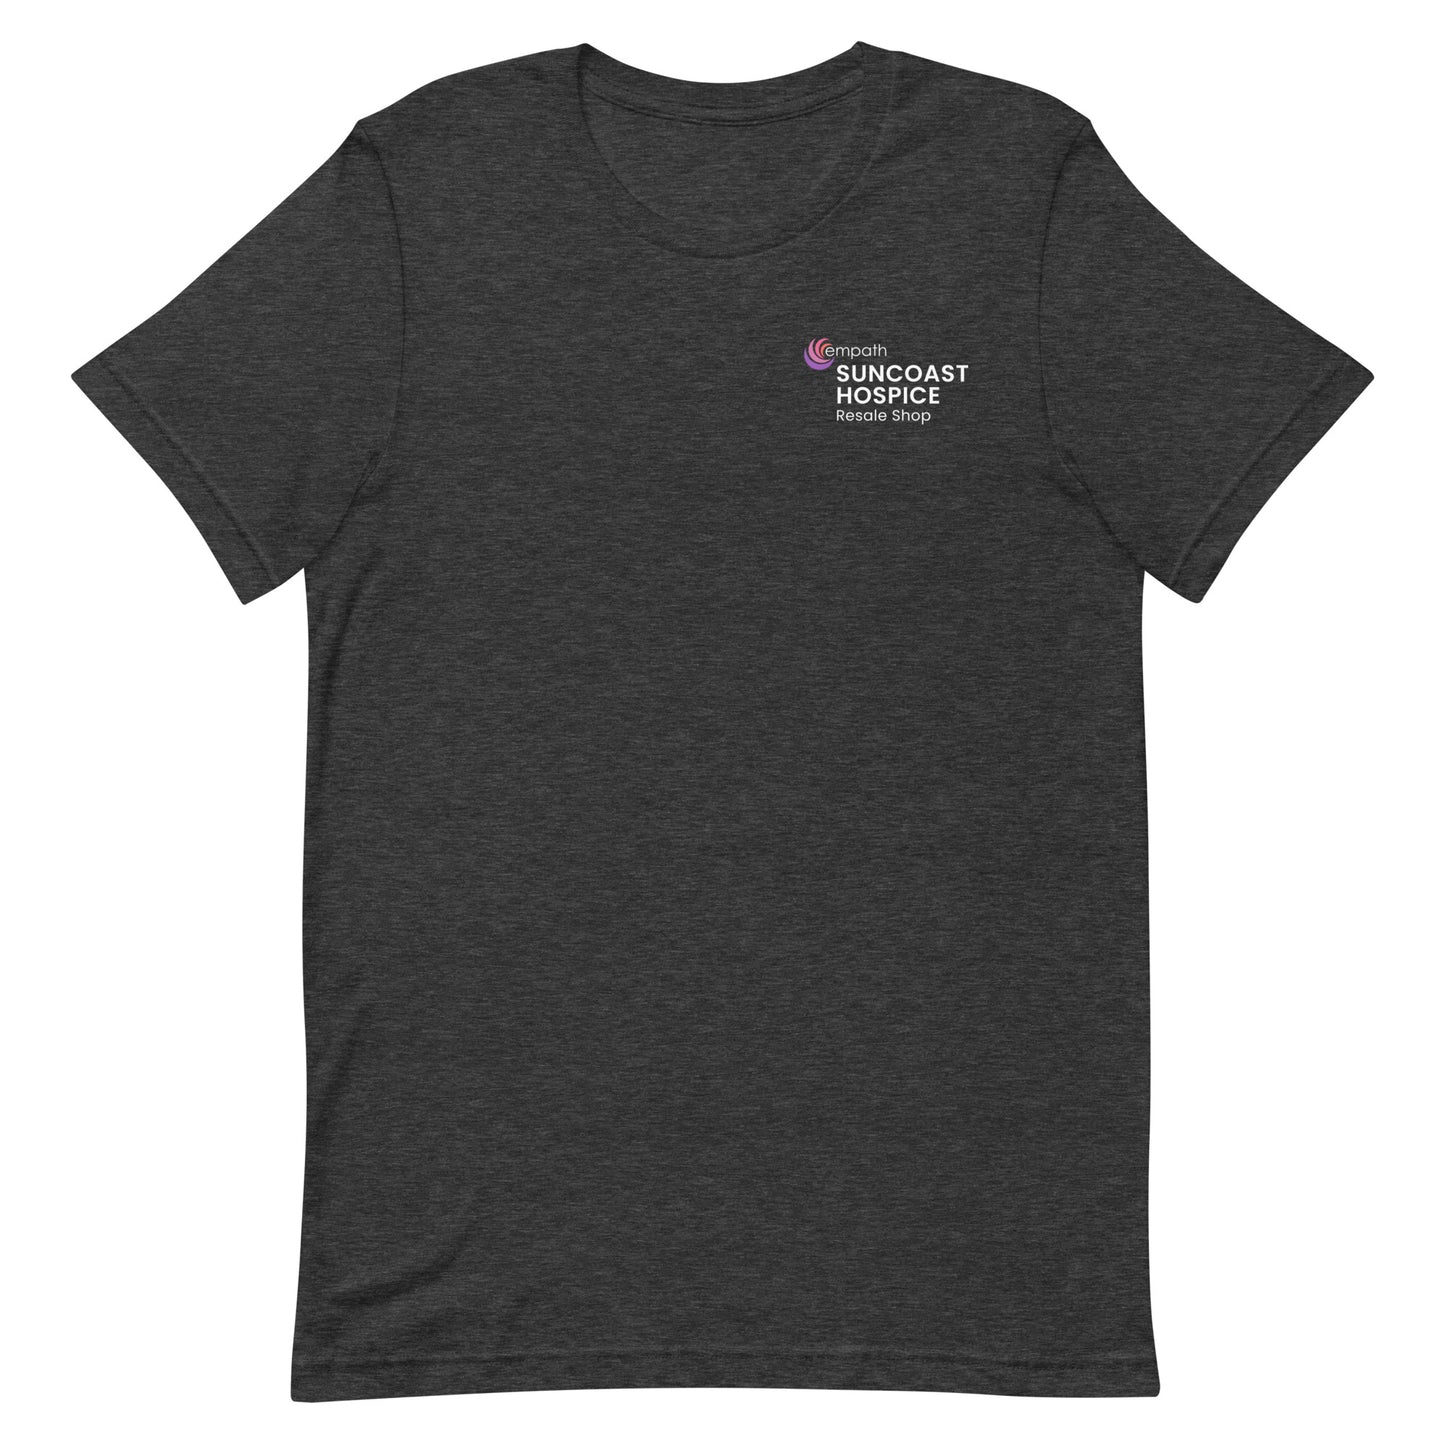 Unisex Classic T-shirt - Suncoast Hospice Resale Shop